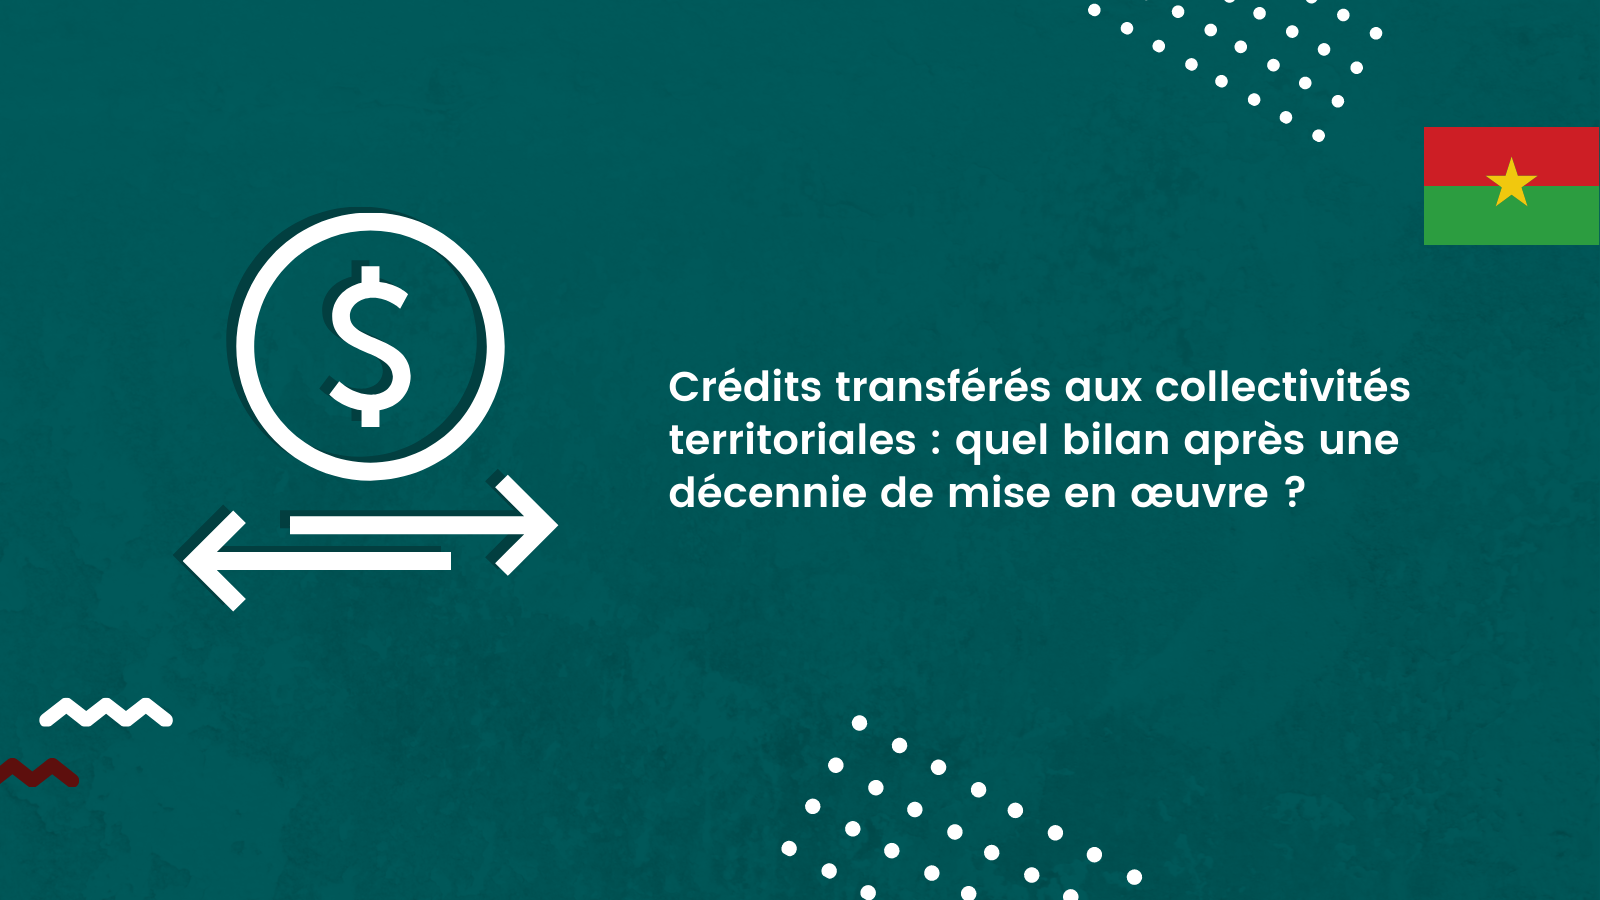 Crédits transférés aux collectivités territoriales : quel bilan après une décennie de mise en œuvre ?